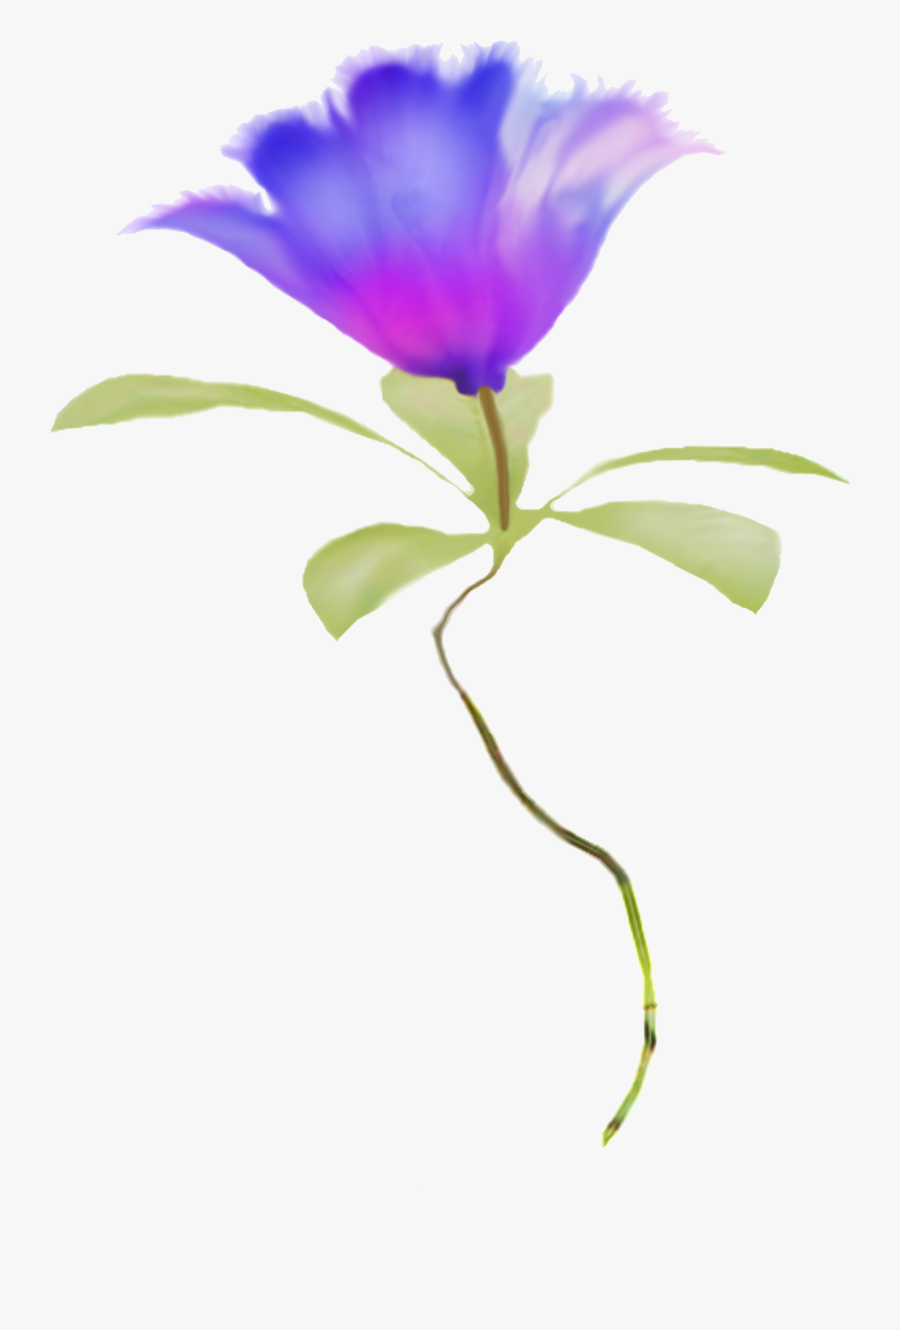 Clipart Watercolor Flowers Blue, Transparent Clipart